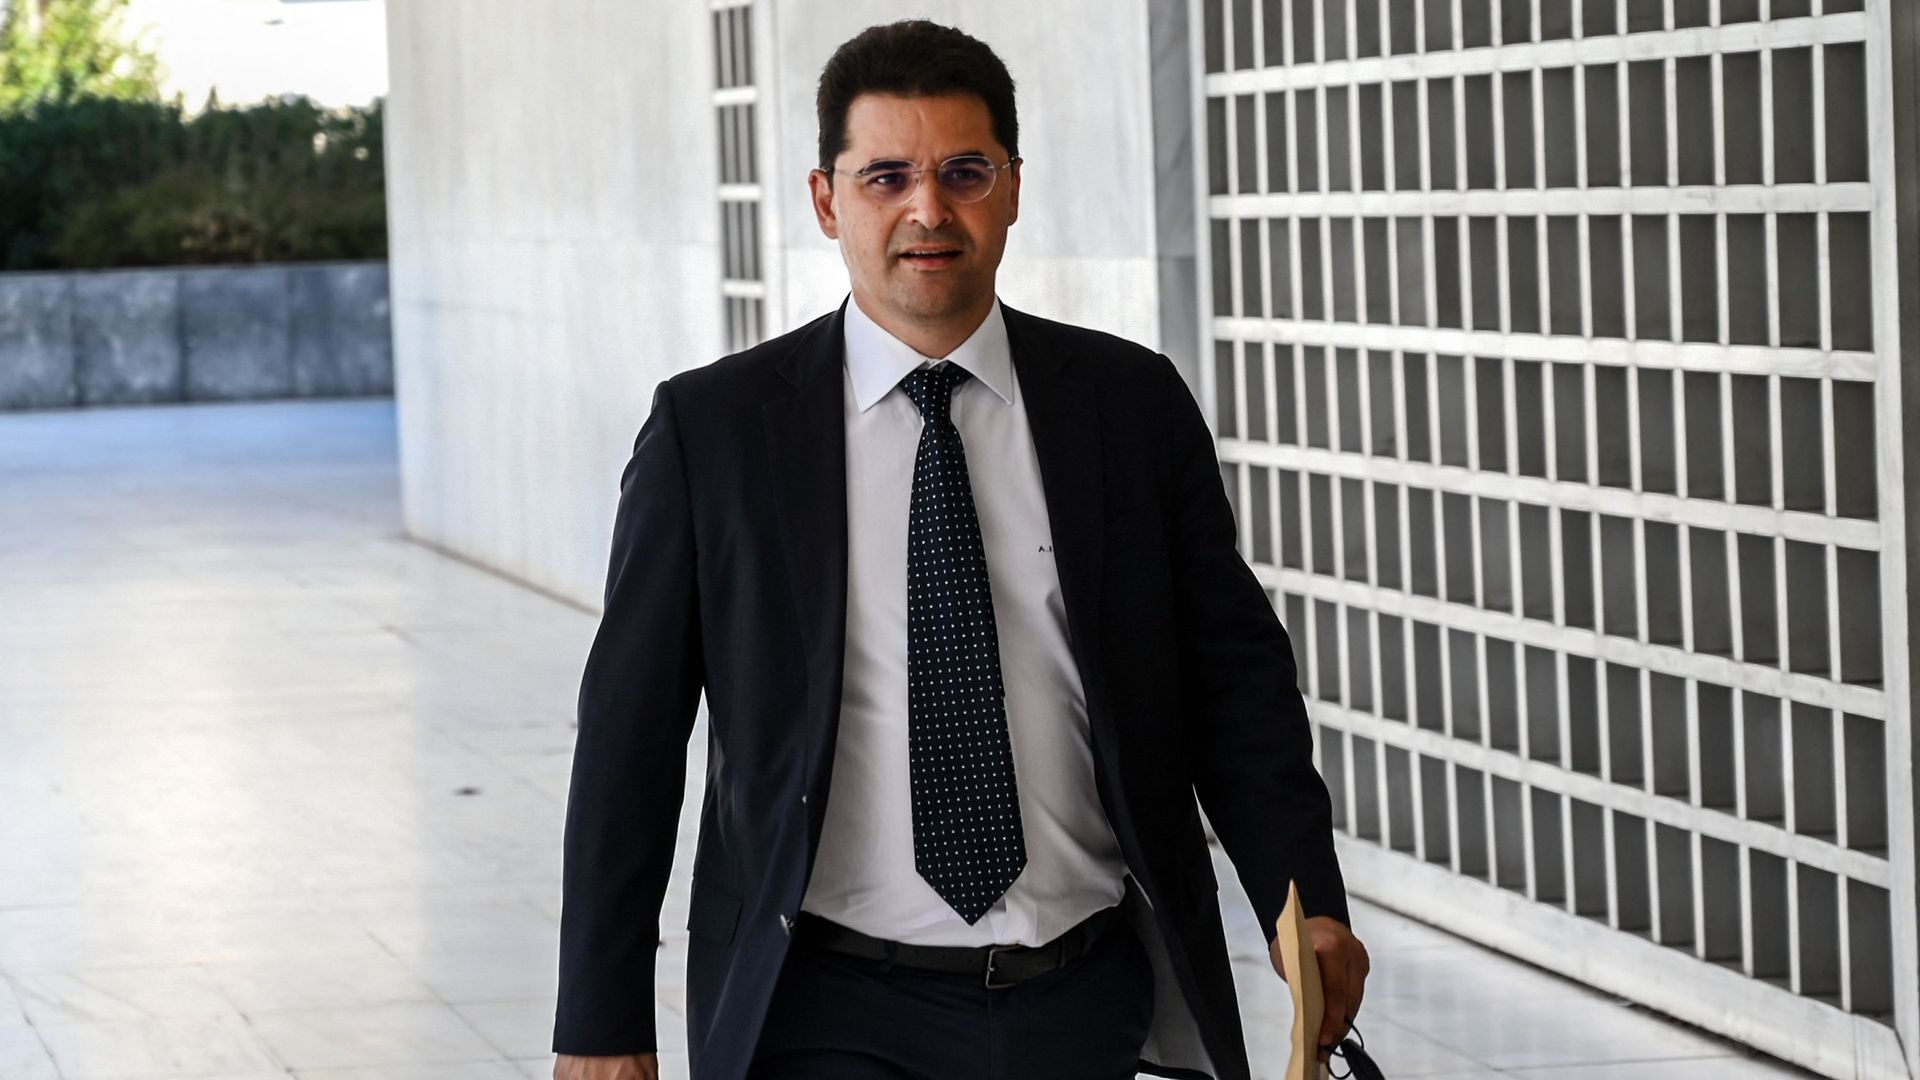 Le journaliste grec Thanasis Koukakis, qui a intenté une action en justice après avoir affirmé avoir été espionné par les services de renseignement de l'État à l'aide du logiciel espion Predator, arrive à la Cour suprême d'Athènes, le 16 août 2022.